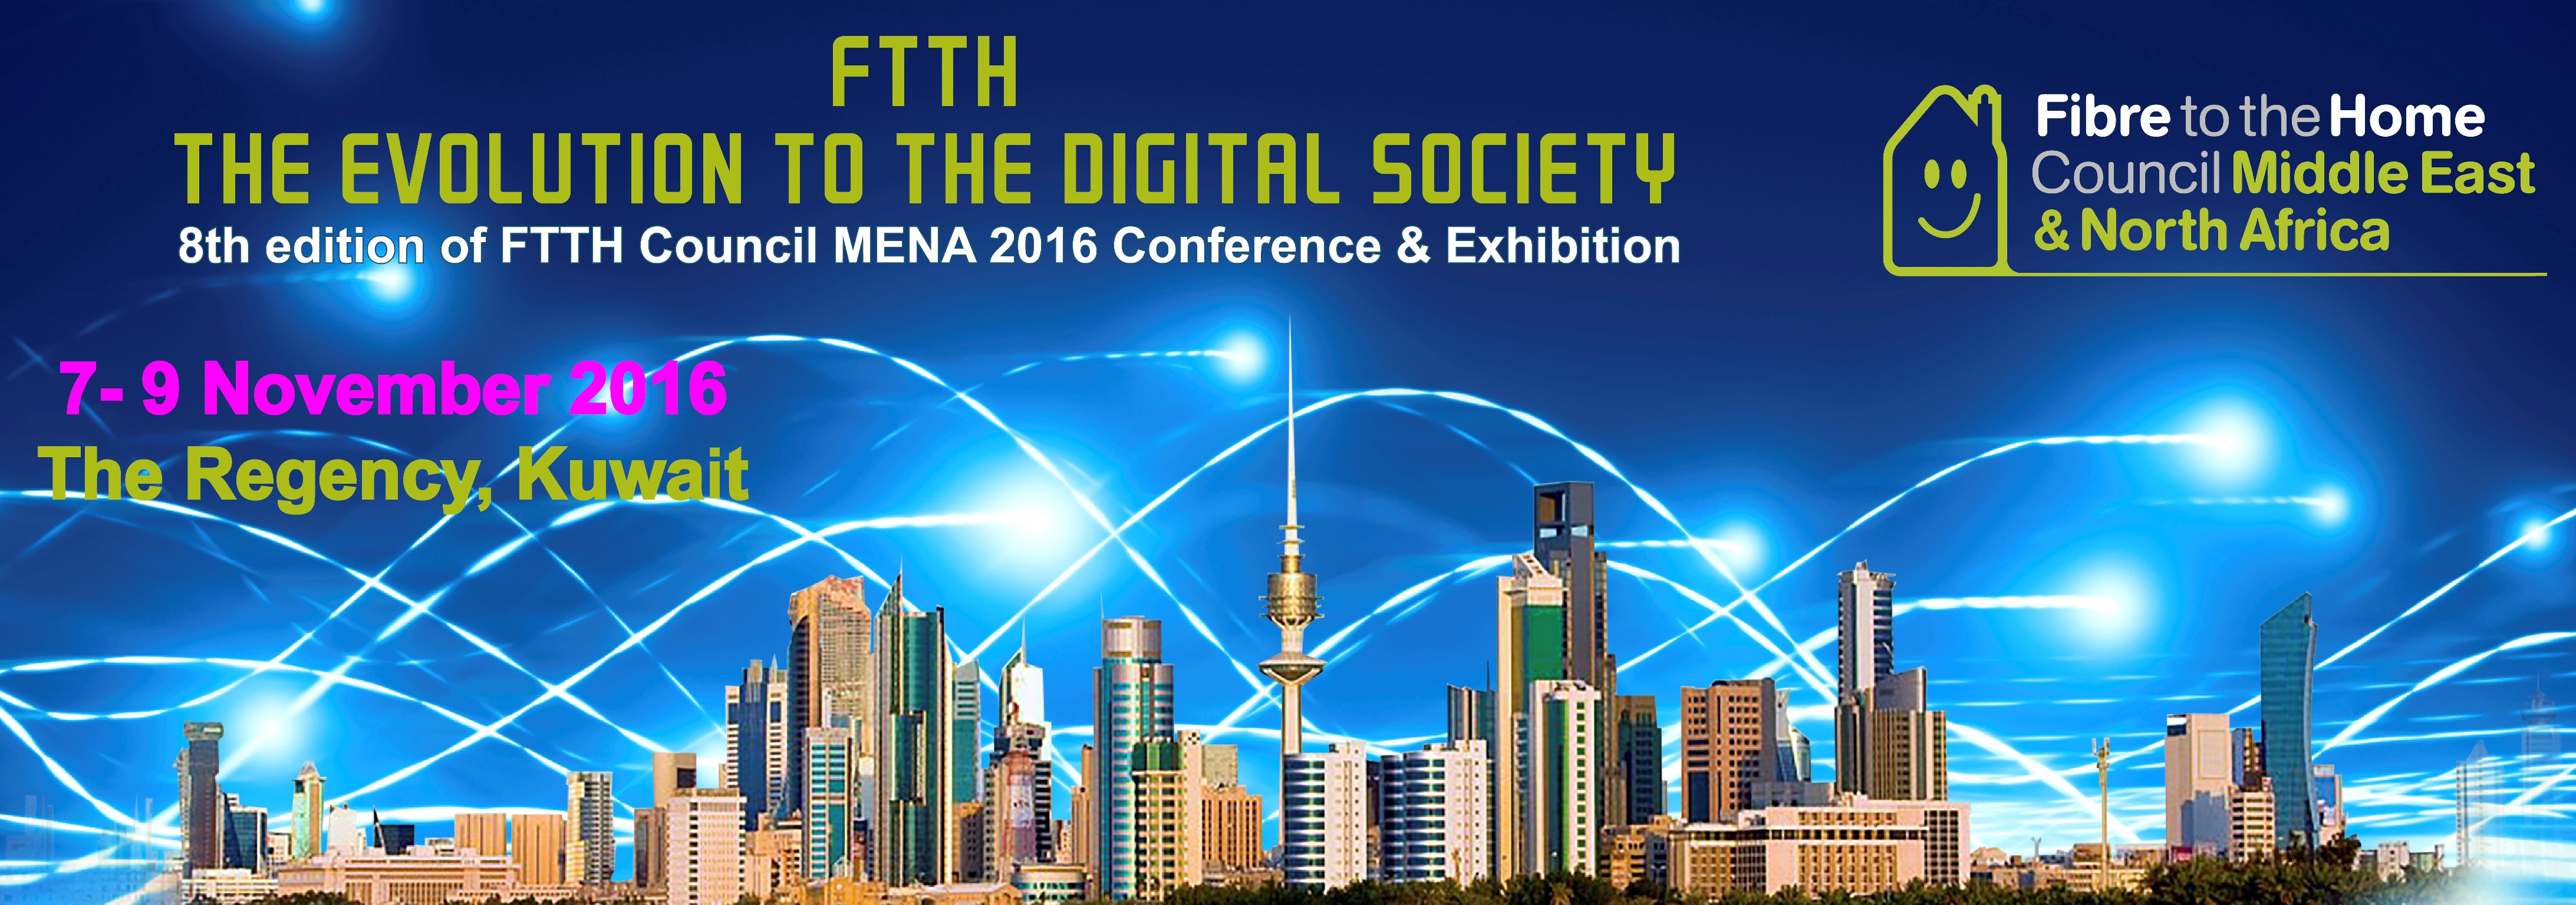 المؤتمر الثامن لتوصيل الألياف البصرية إلى المنازل في الشرق الأوسط وشمال إفريقيا بالكويت